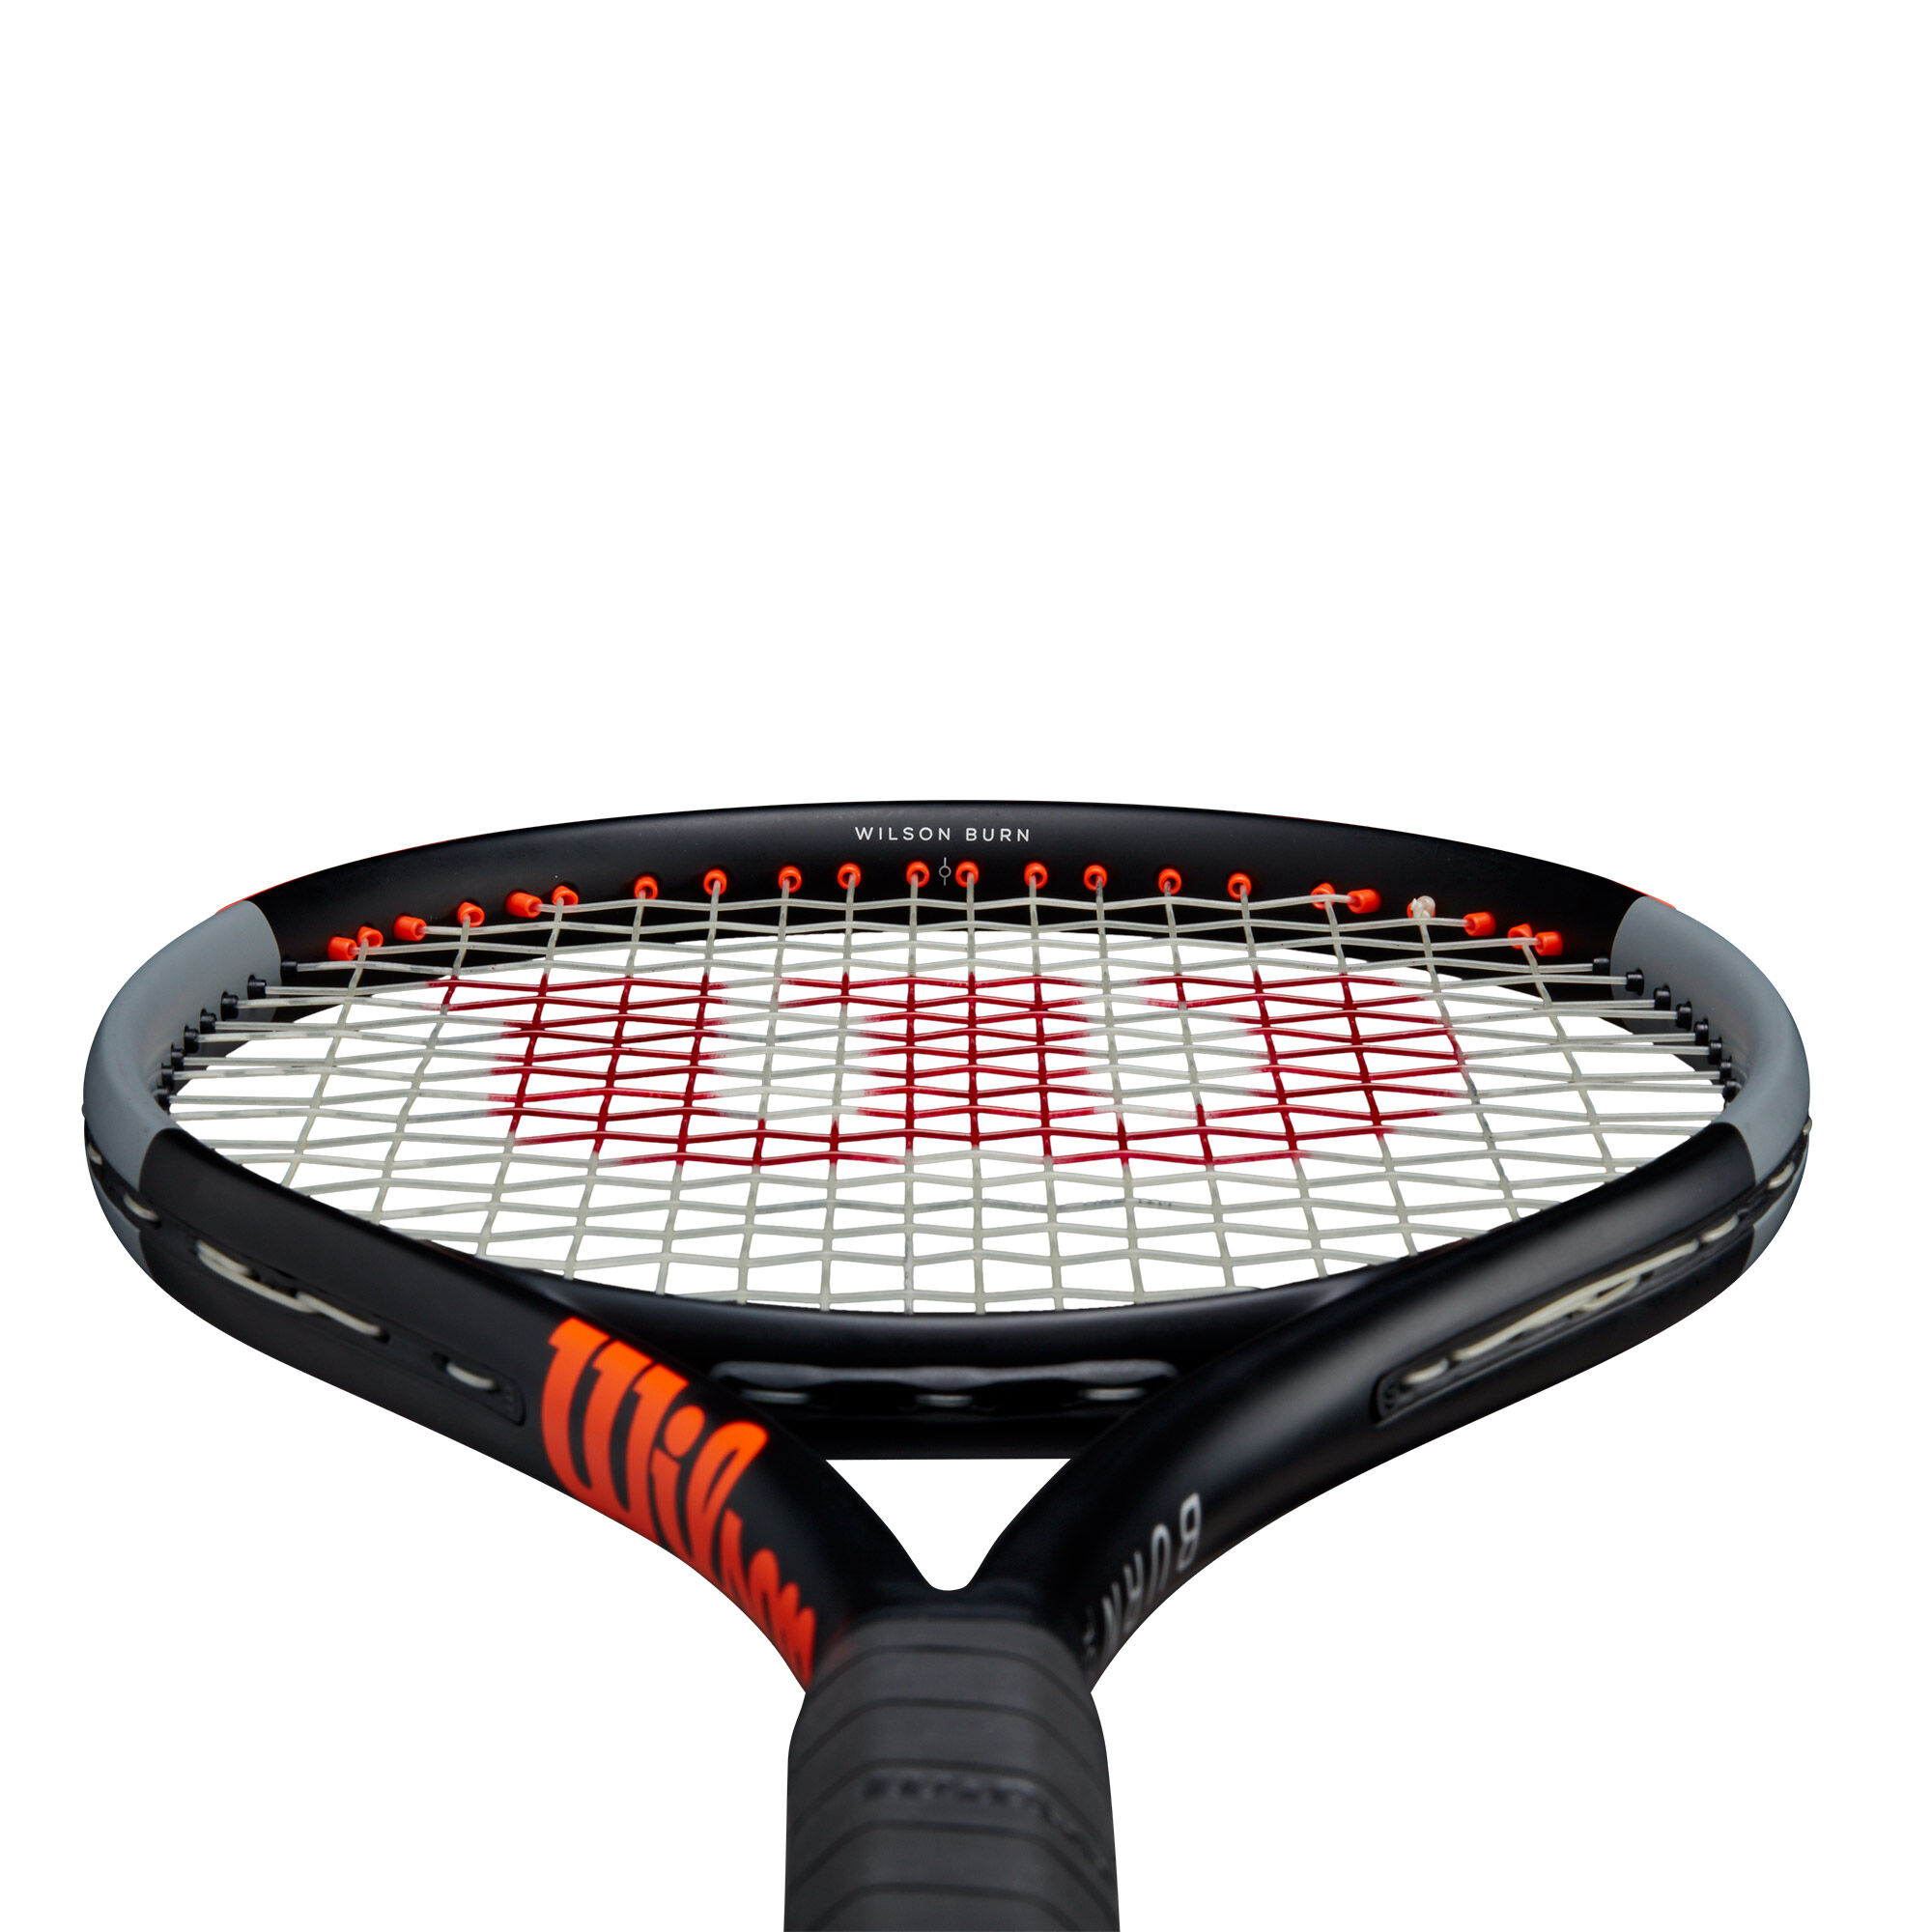 660円 初回限定 Wilson BURN 26S ジュニア 硬式 テニスラケット 26インチ